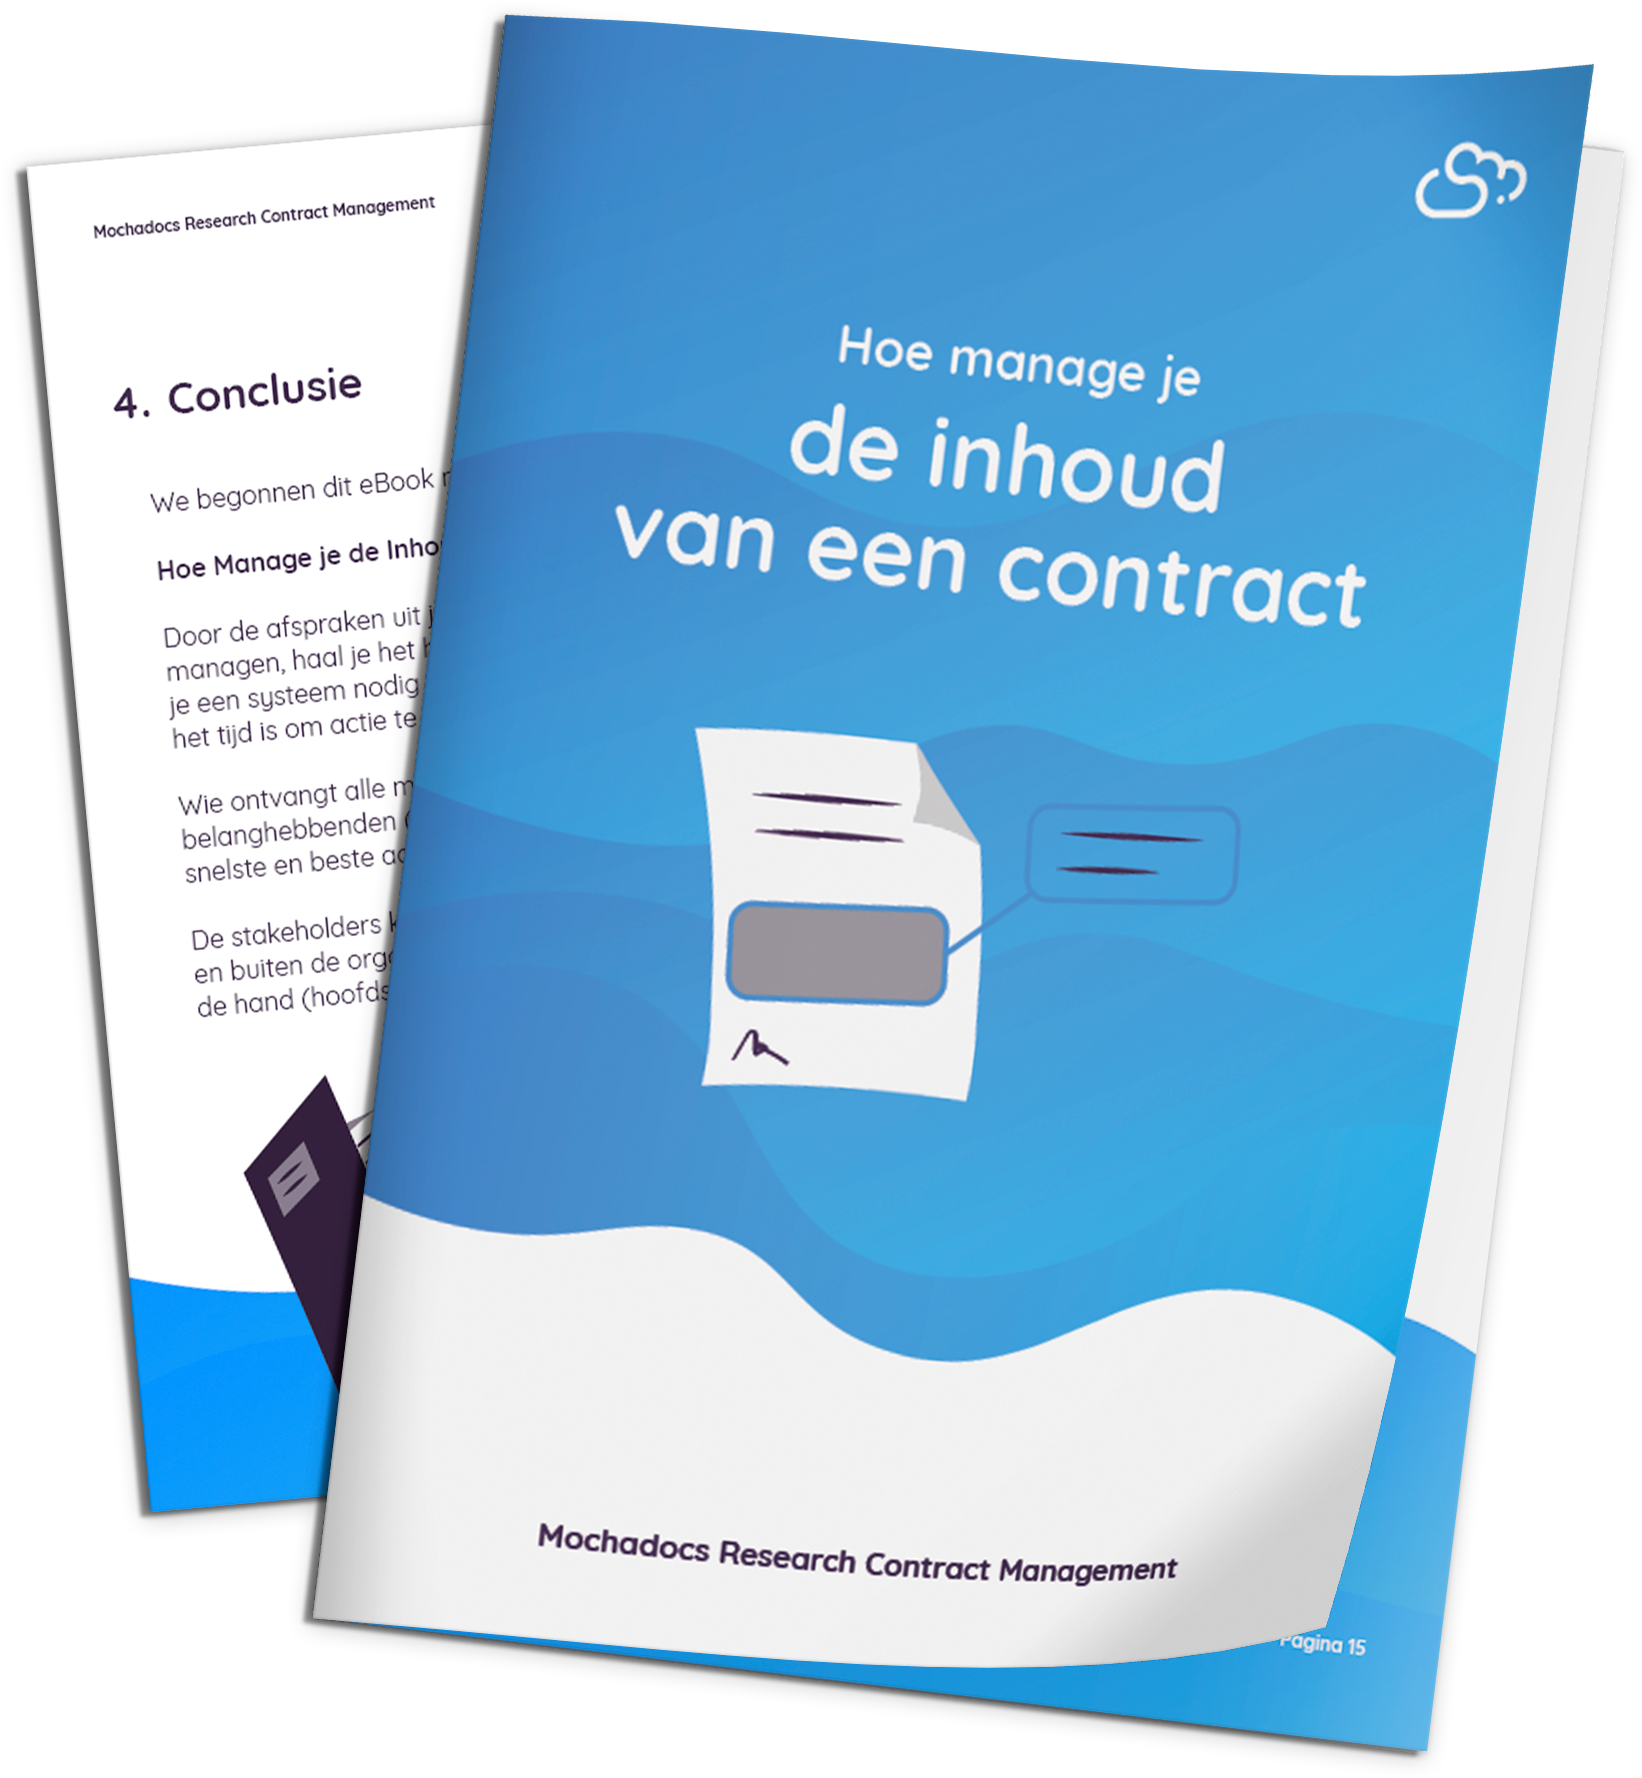 Mochadocs - Contract Management - eBook - Hoe manage je de inhoud van een contract?